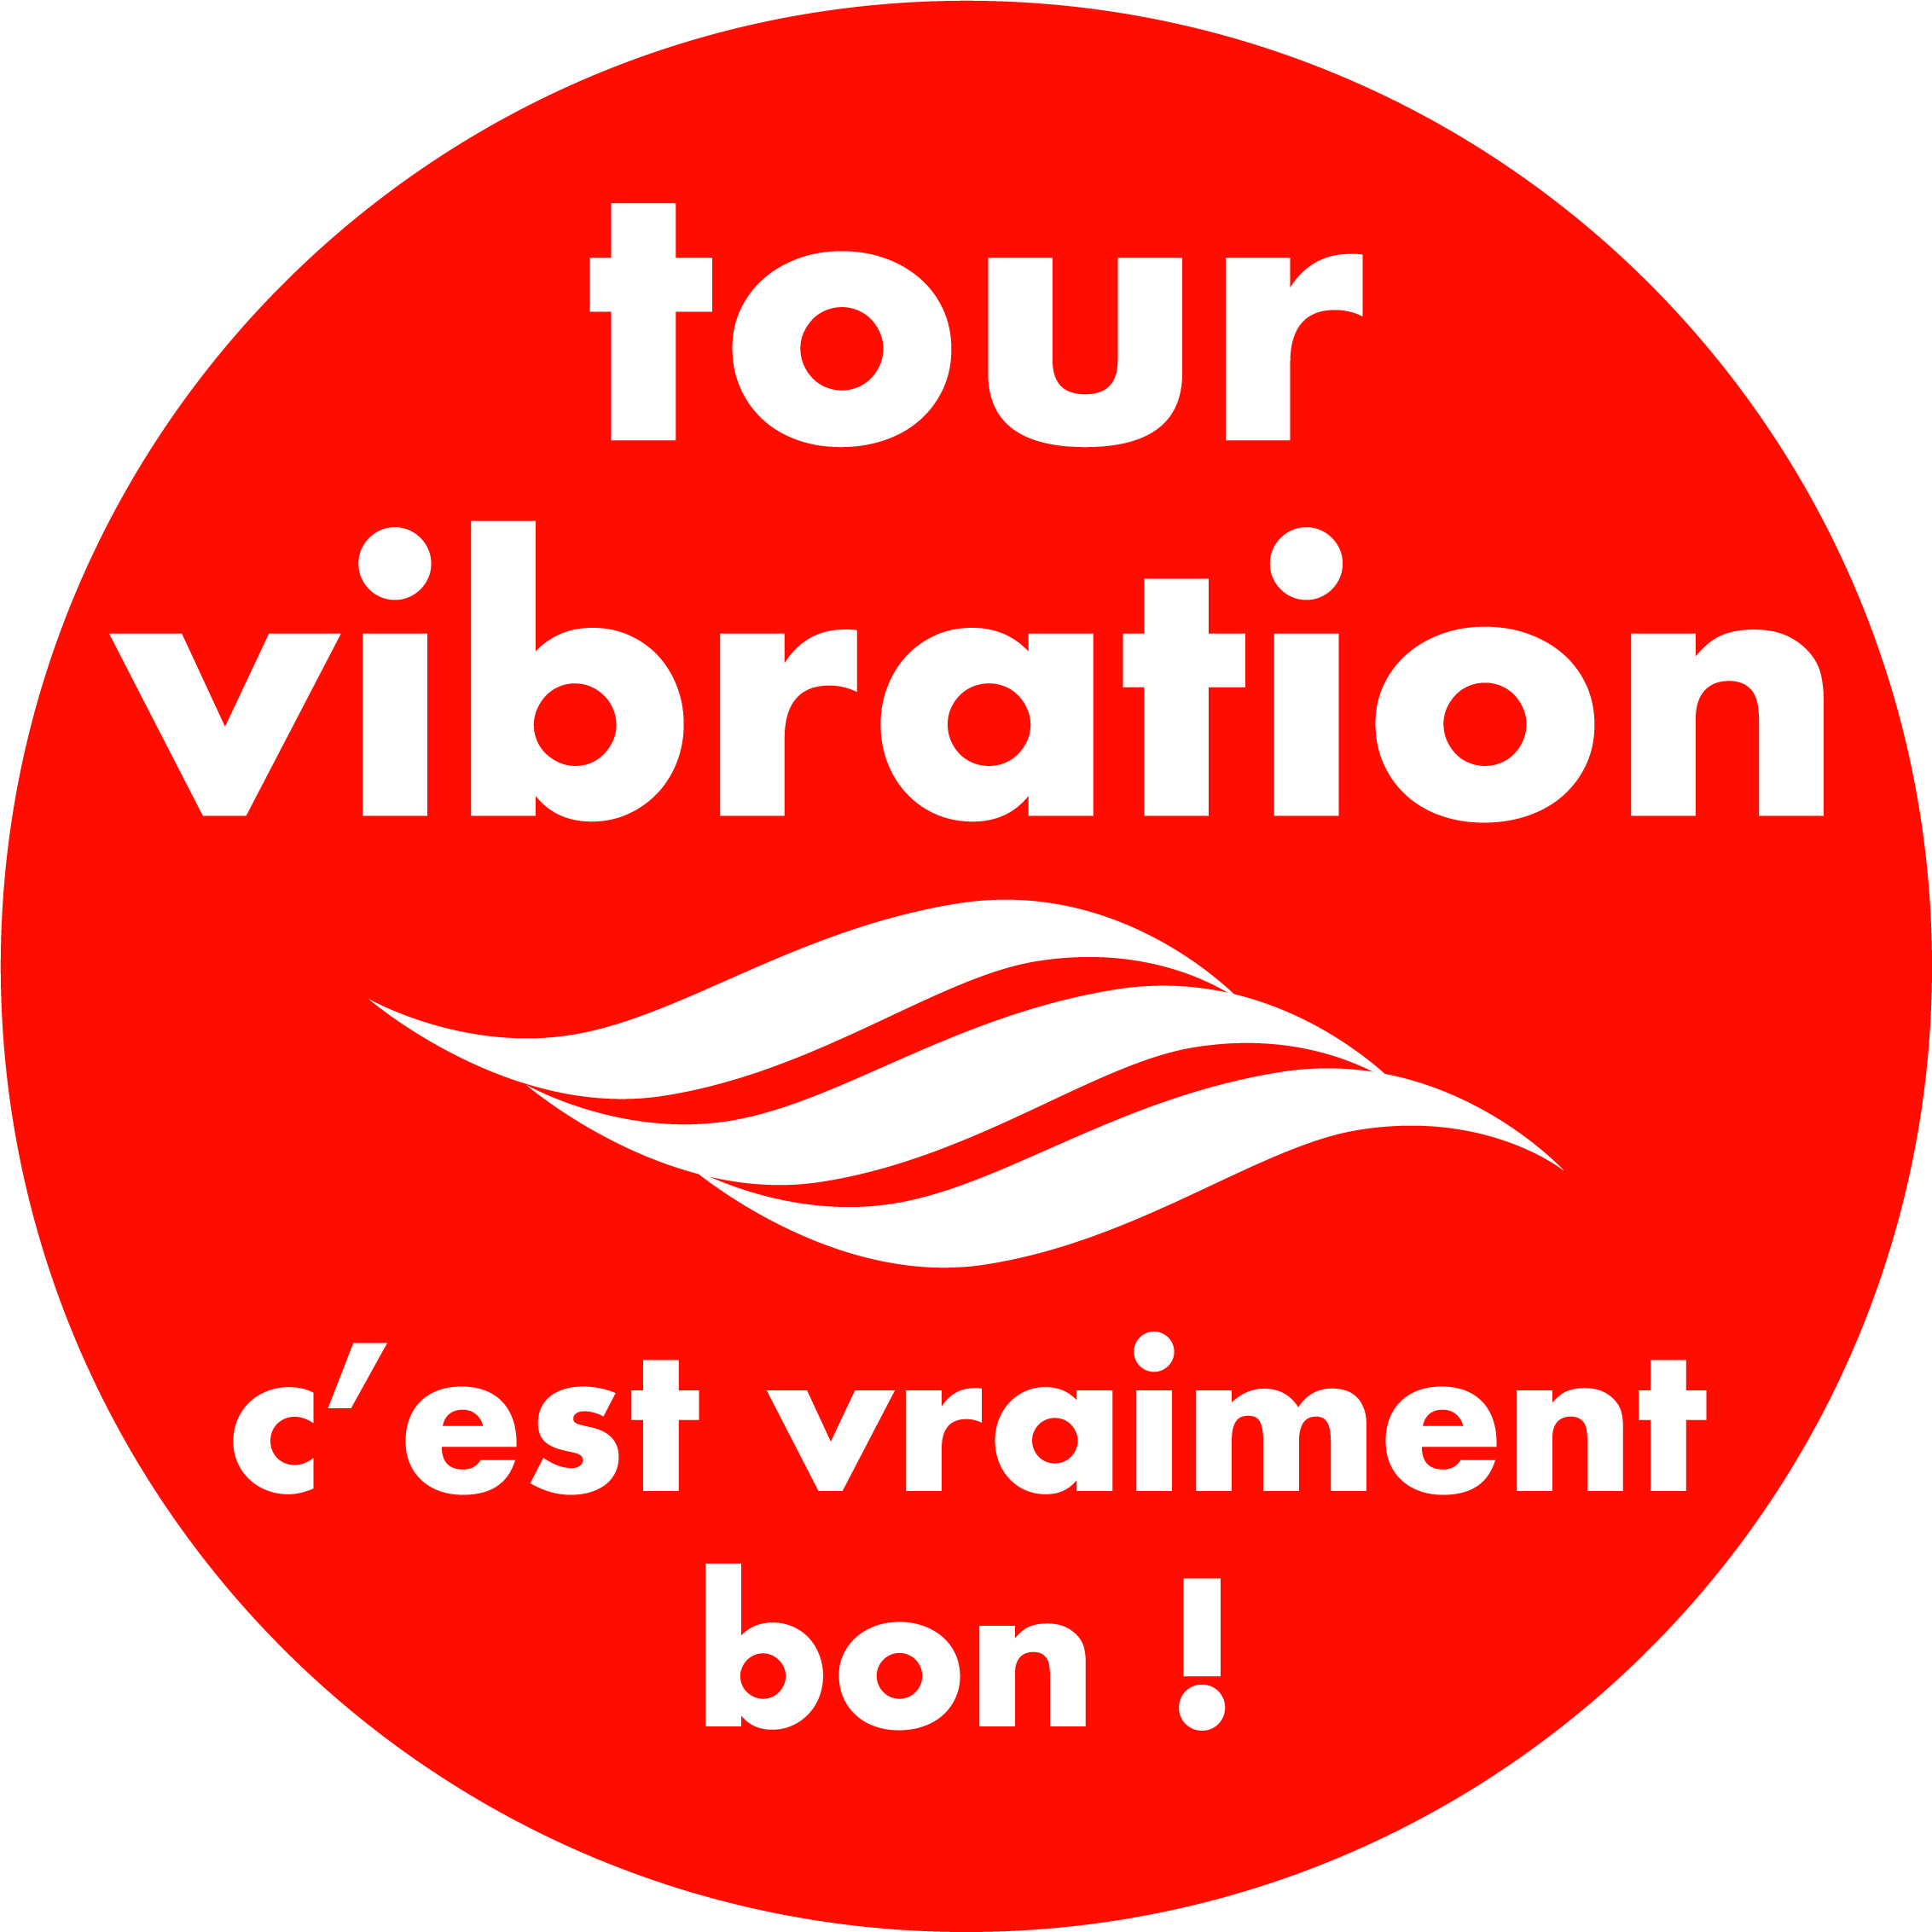 Le Tour Vibration 2018 de retour dès ce 15 septembre 